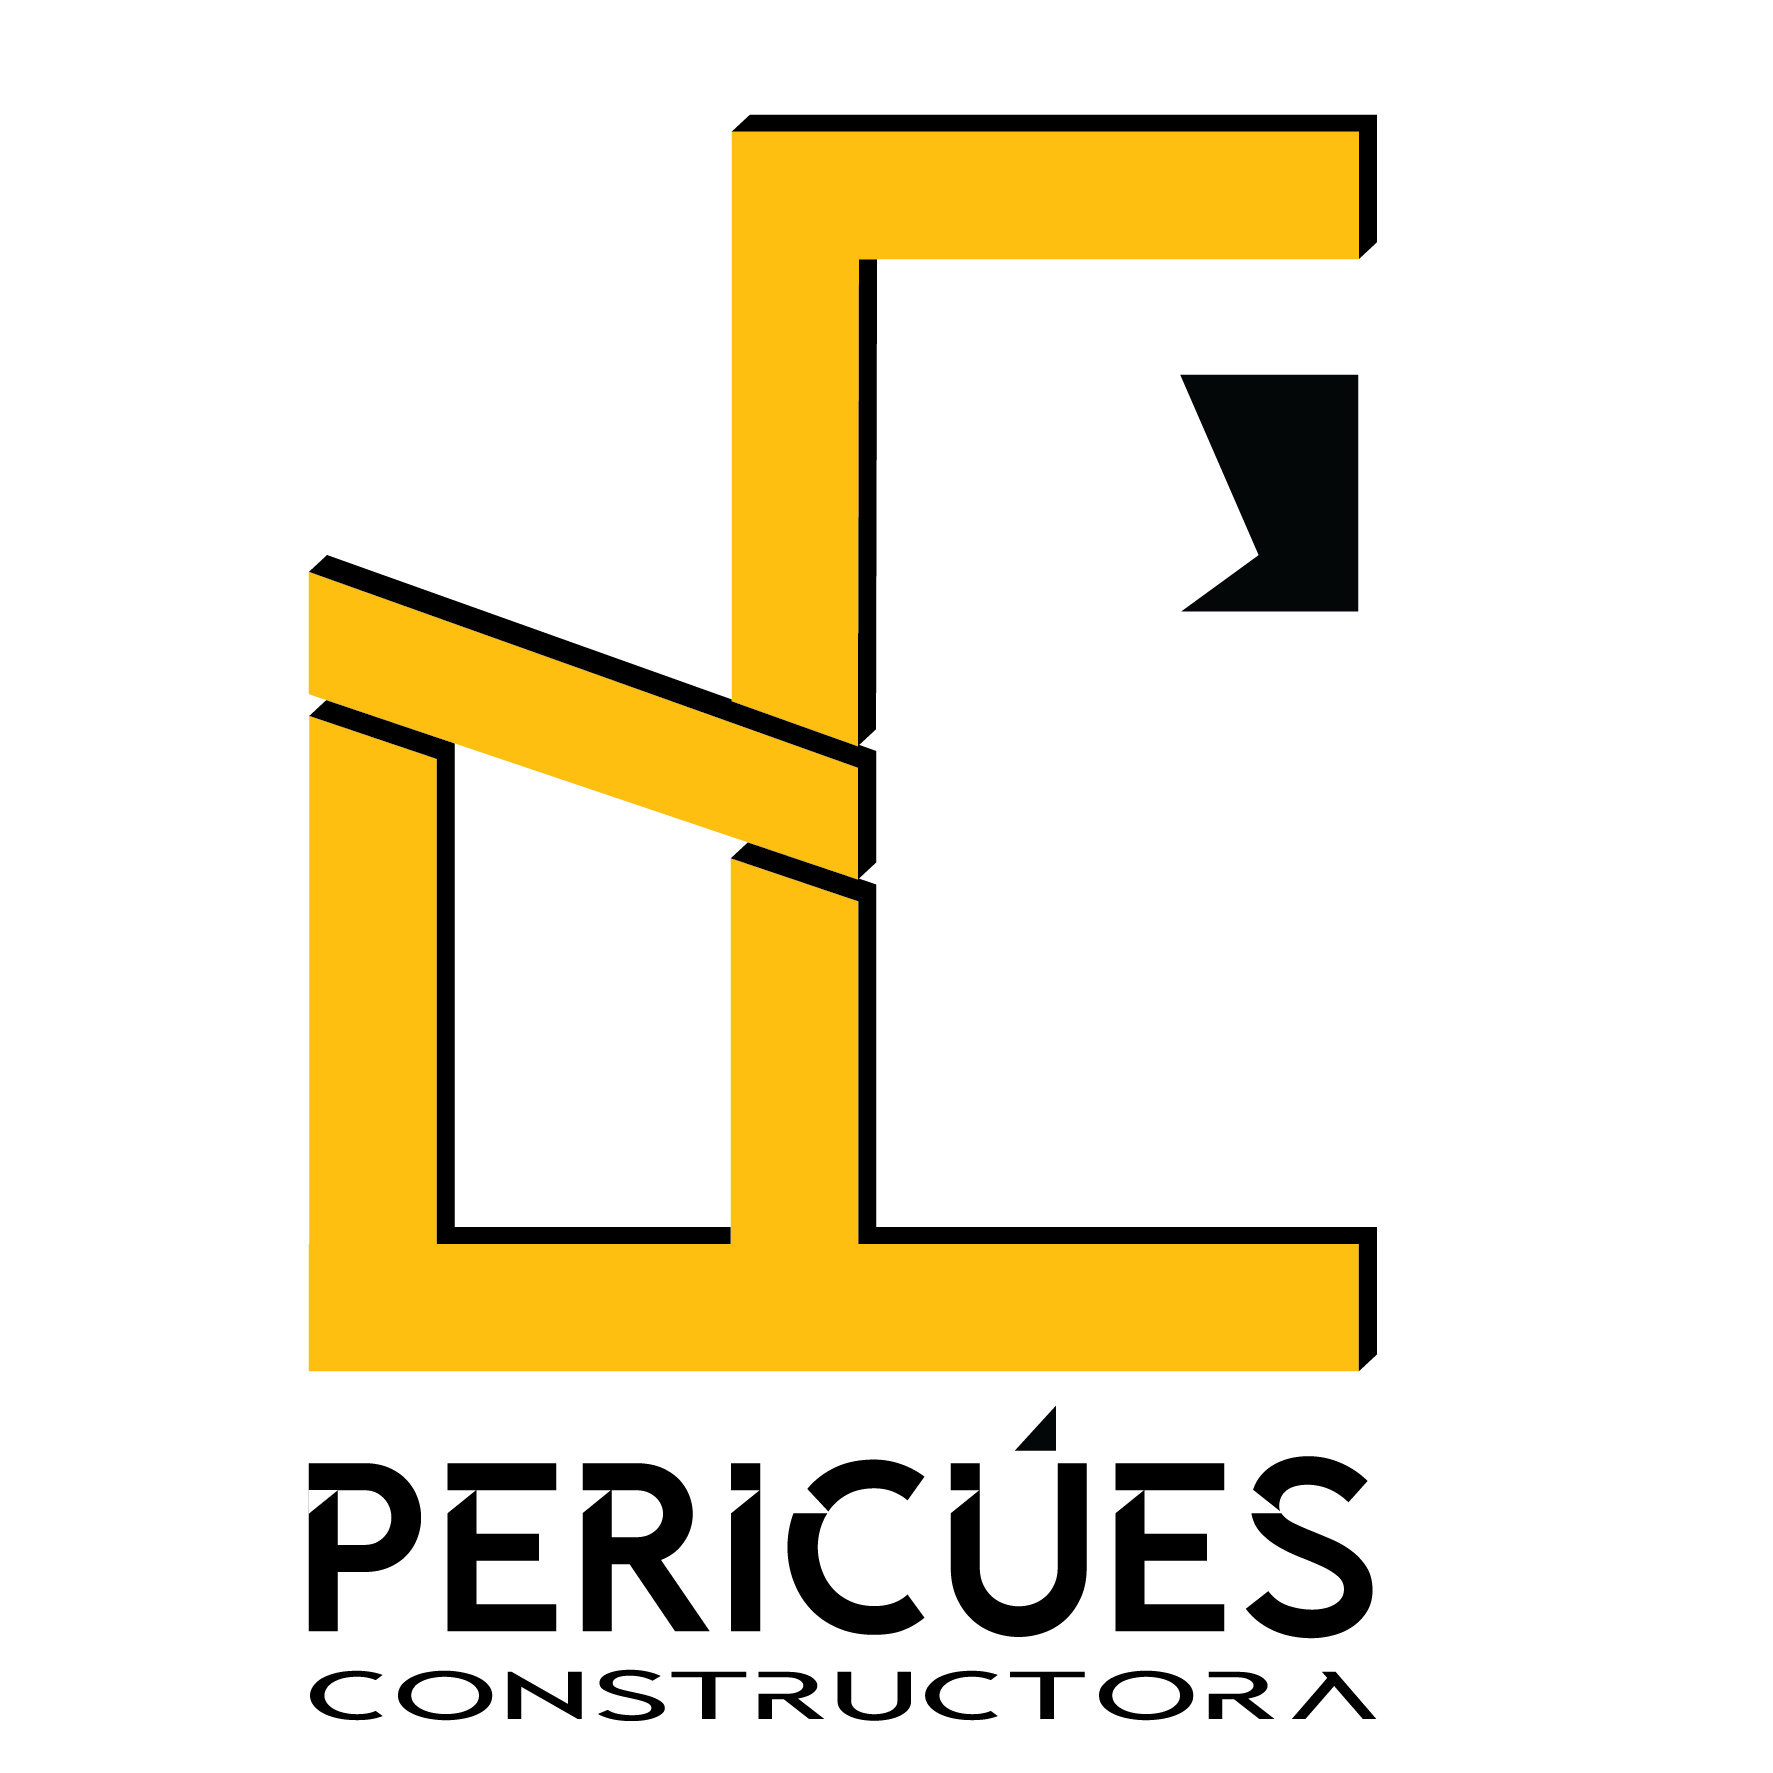 PERICÚES CONSTRUCTORA